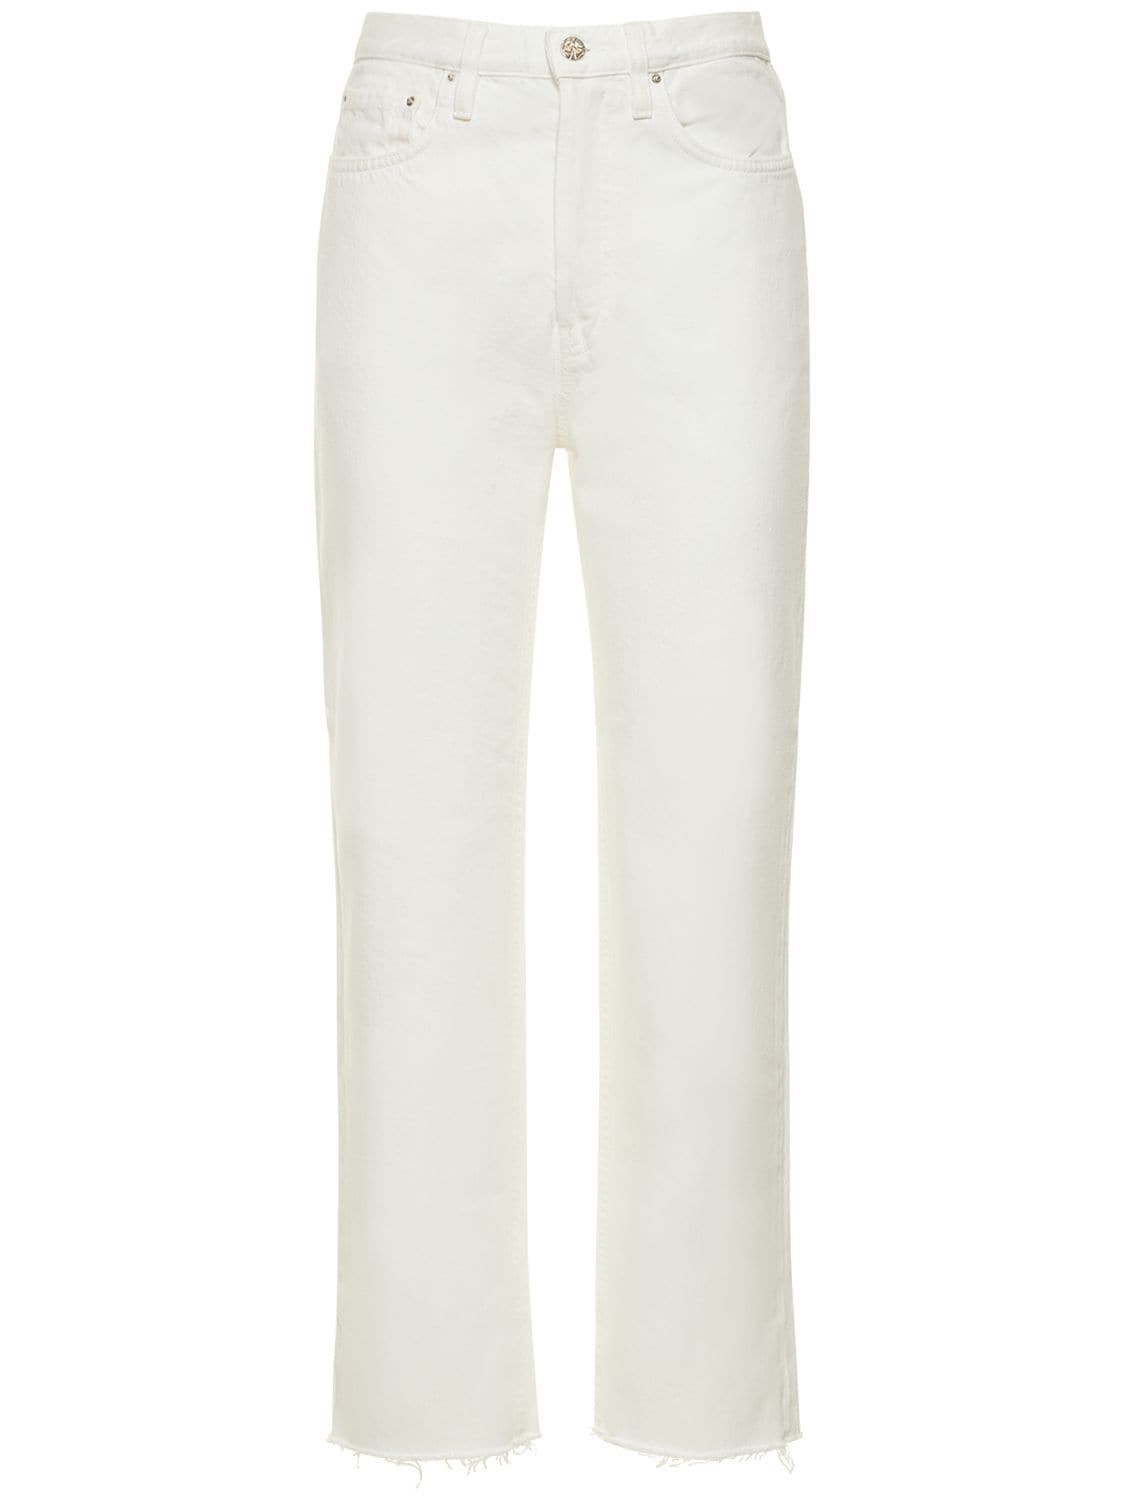 Totême Organic Cotton Denim Classic Cut Jeans In White